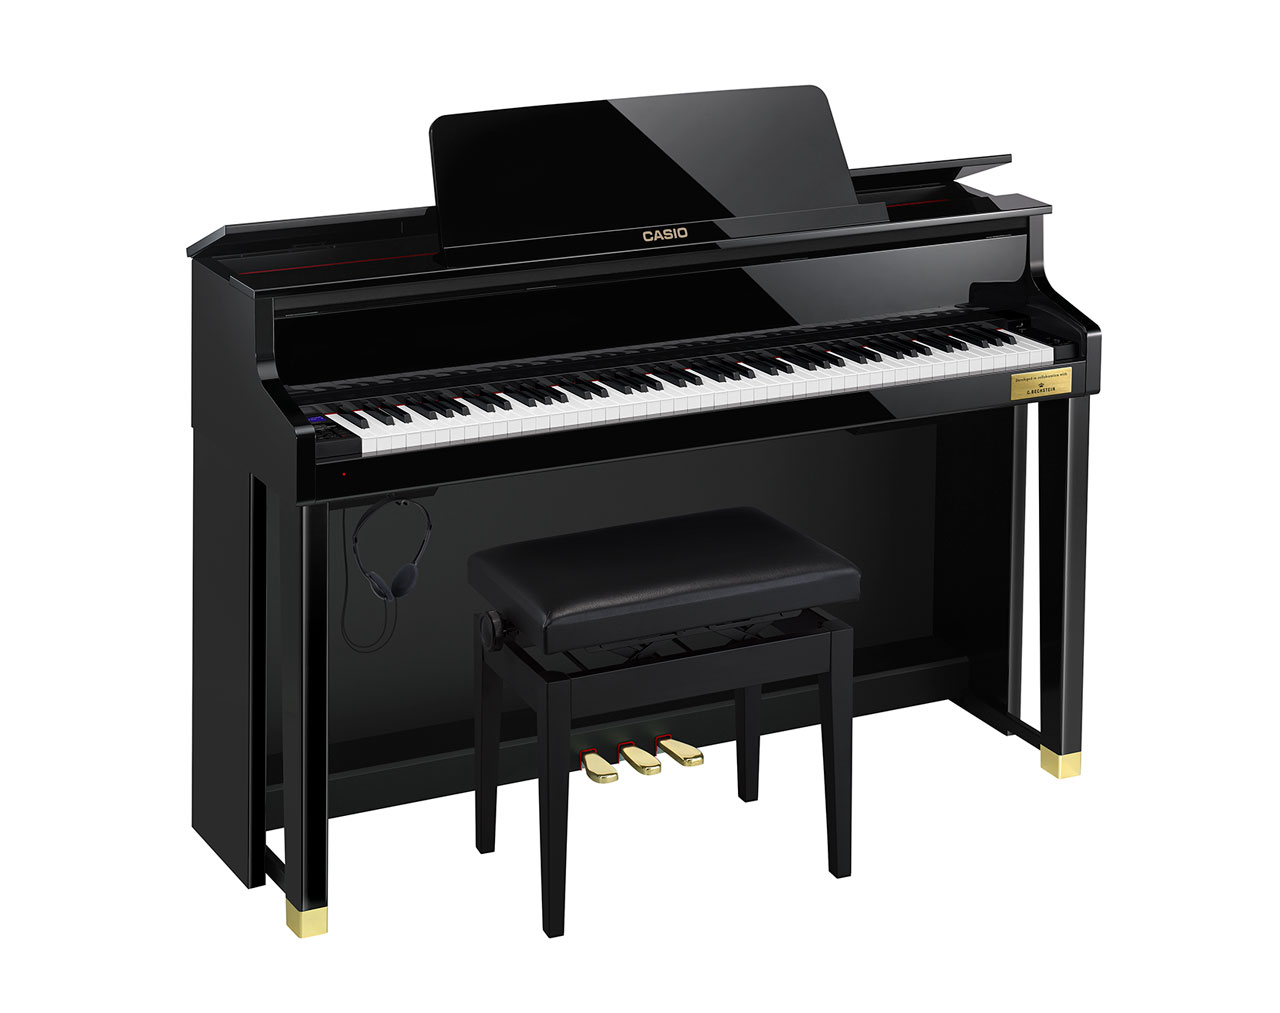 グランドピアノに徹底的にこだわった至極のクオリティ世界有数の歴史あるピアノメーカーであるC.ベヒシュタイン社と共同開発した音や鍵盤を搭載し、シリーズ最上位モデルであるGP-510をベースに楽器専門店としてのノウハウやお客様のご要望にお応えした機能を投入。ピアノ音色の追加や操作パネルの変更、ヘッドホン […]